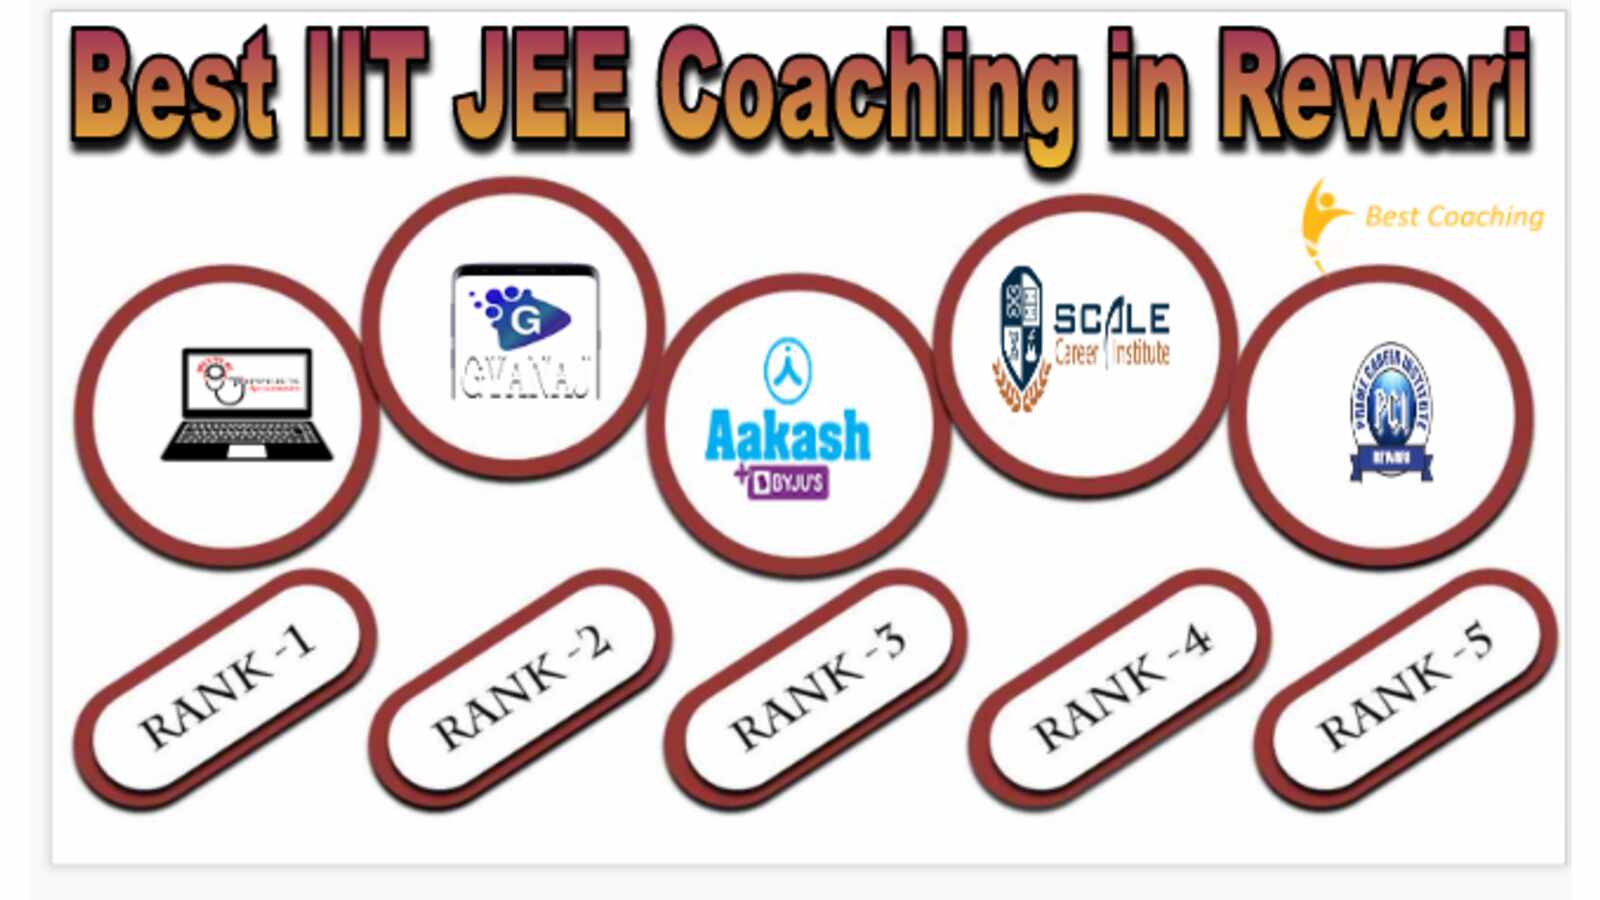 Best IIT JEE Coaching in Rewari